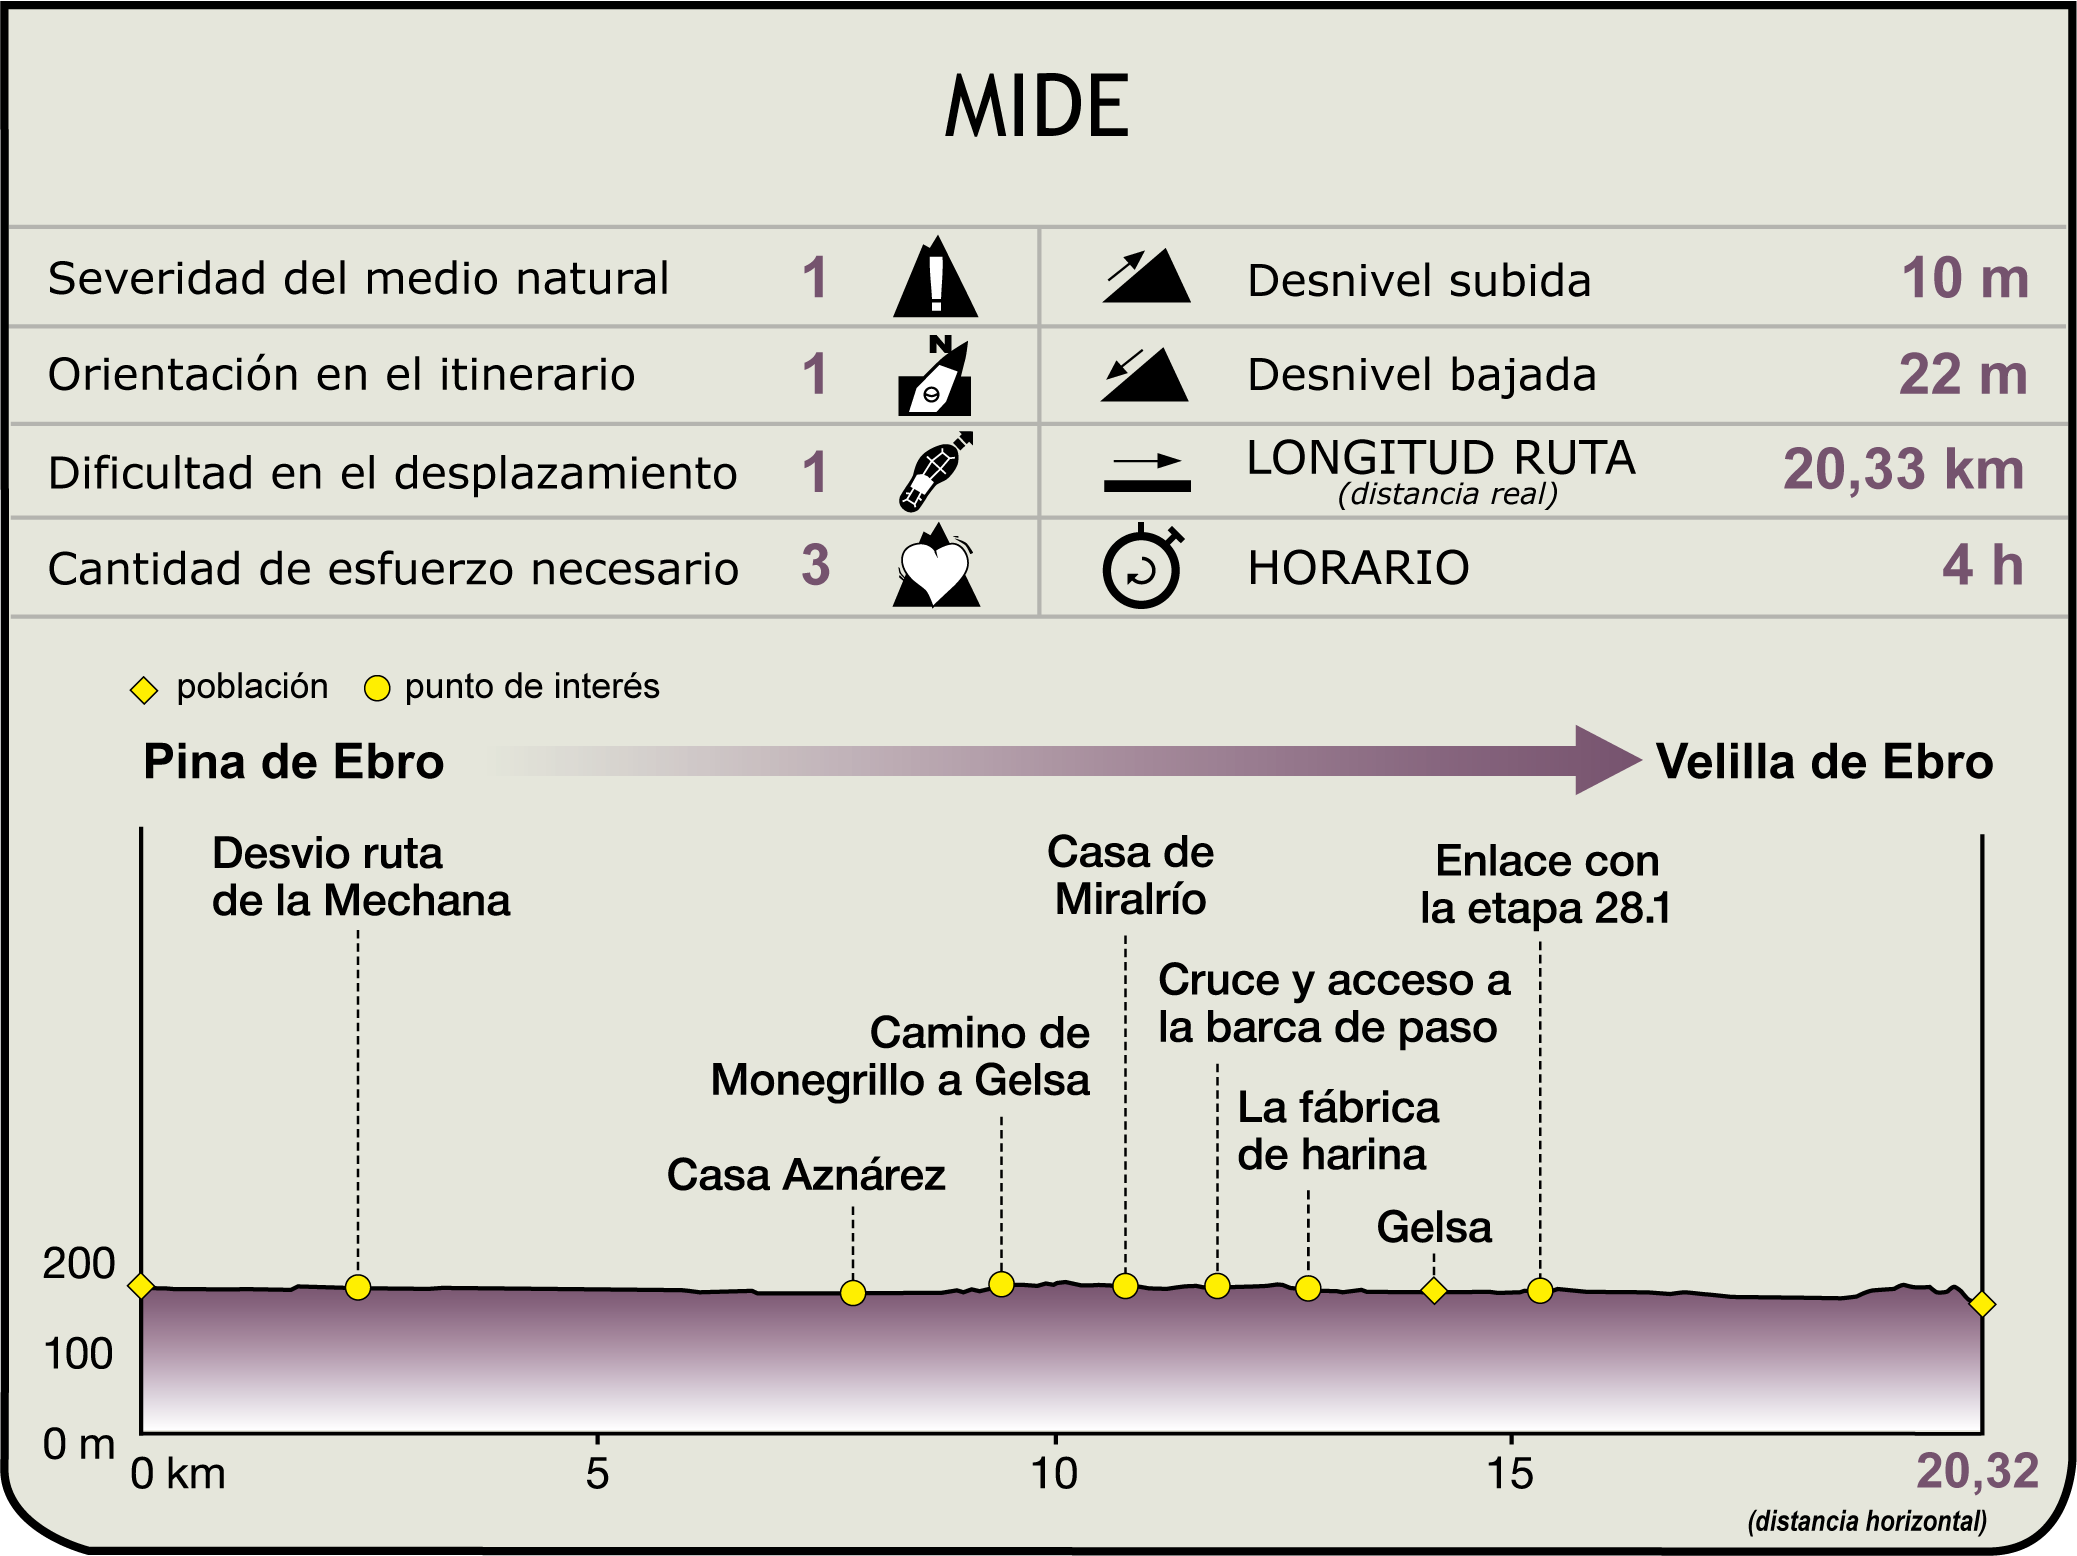 Perfil MIDE de la Etapa Pina de Ebro-Velilla de Ebro